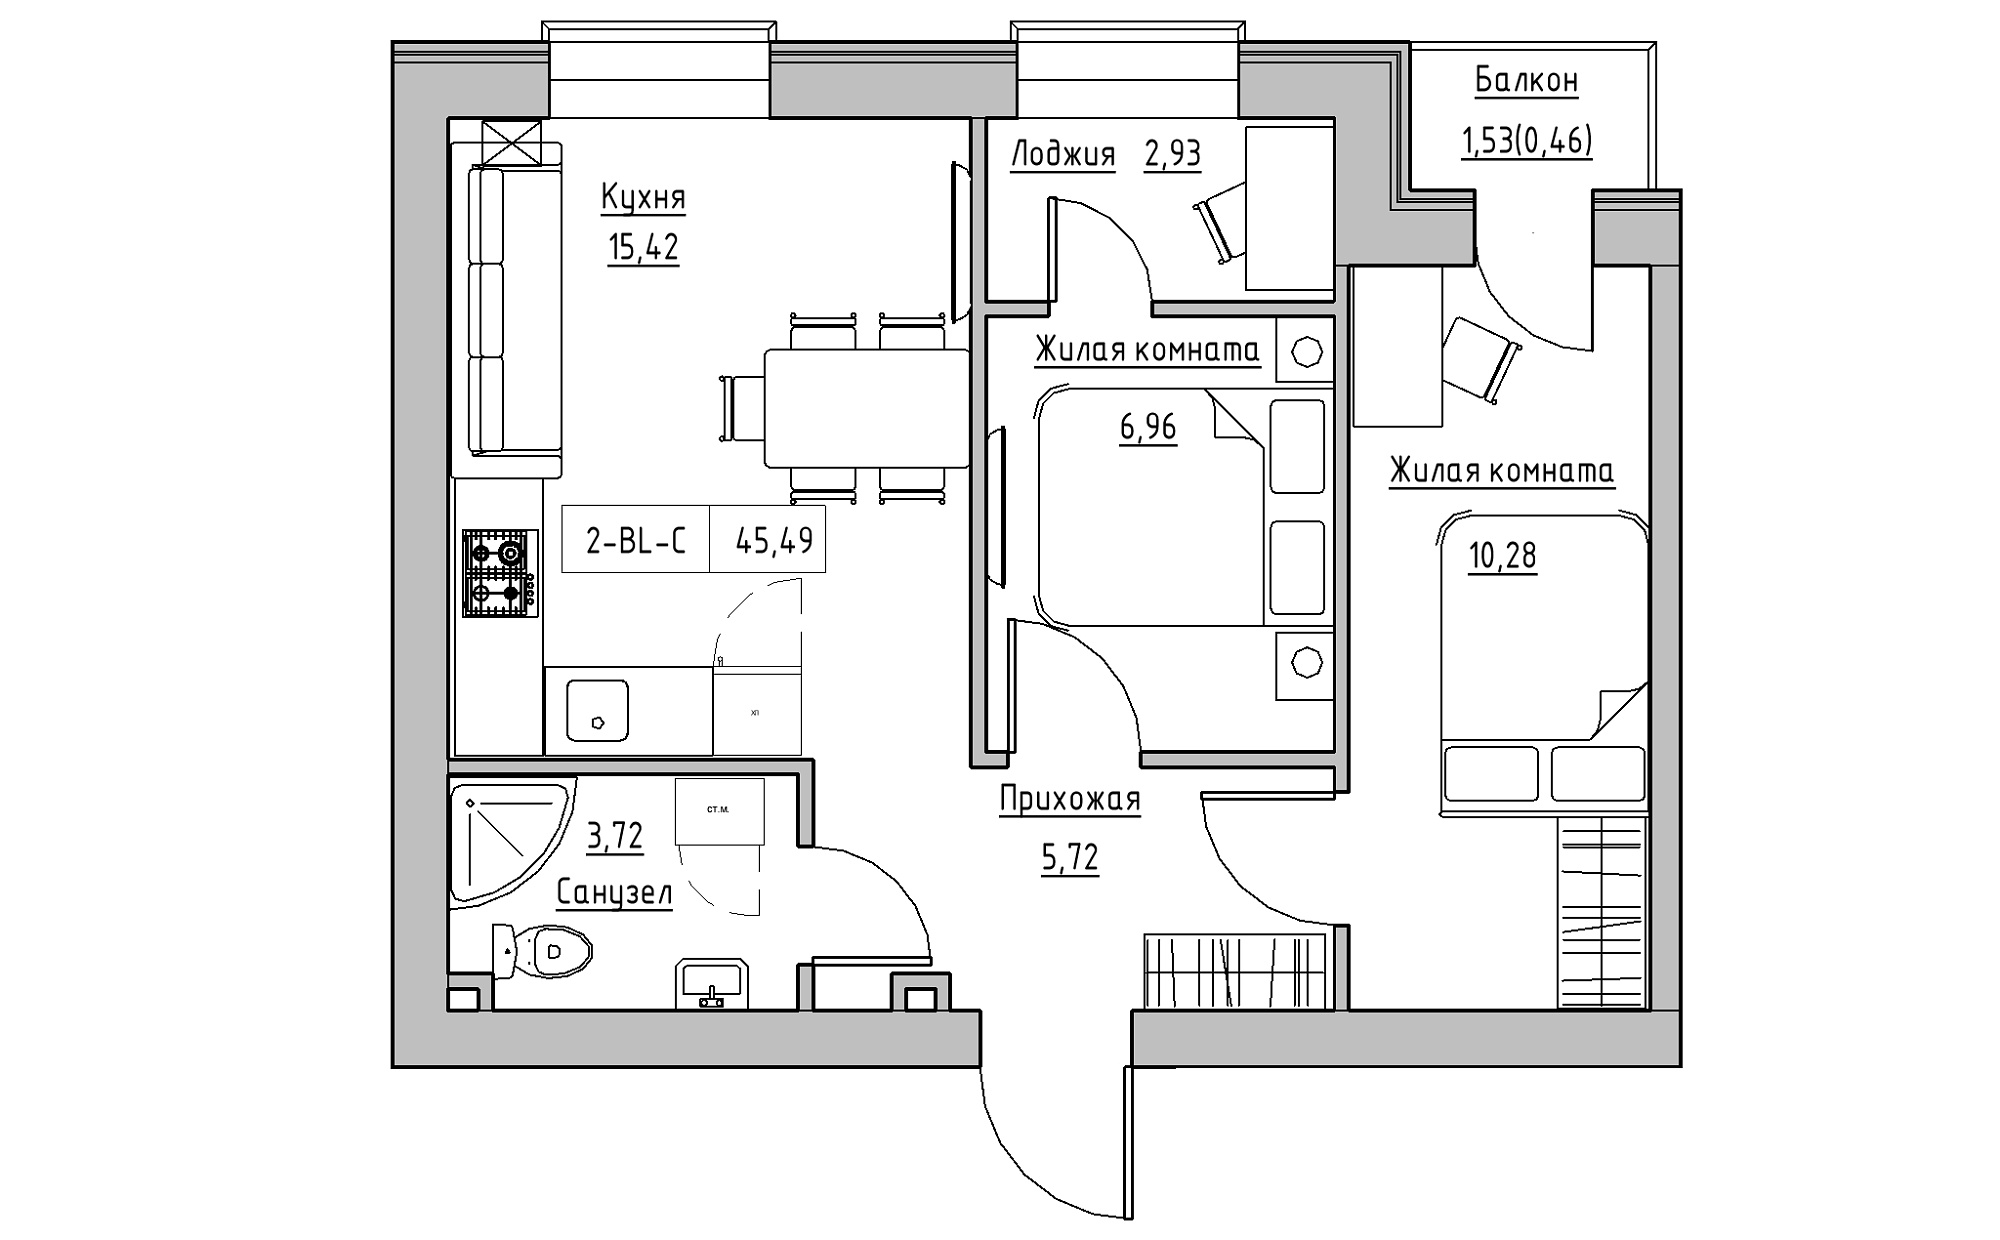 Планування 2-к квартира площею 45.49м2, KS-022-02/0008.